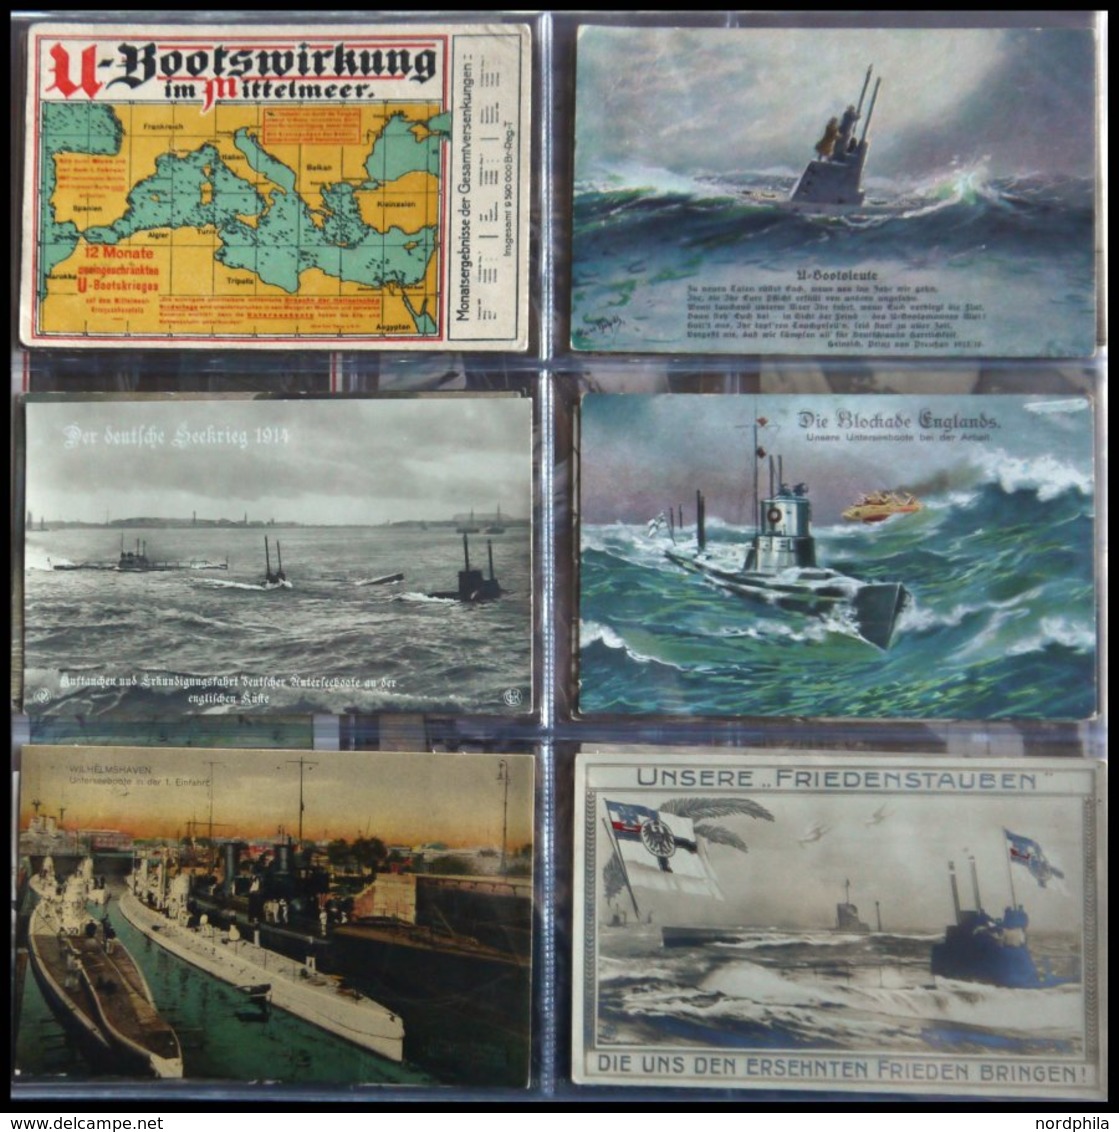 ALTE POSTKARTEN - SCHIFFE KAISERL. MARINE BIS 1918 U-Boote: Sammlung von 96 verschiedenen Ansichtskarten mit U-Boot-Moti